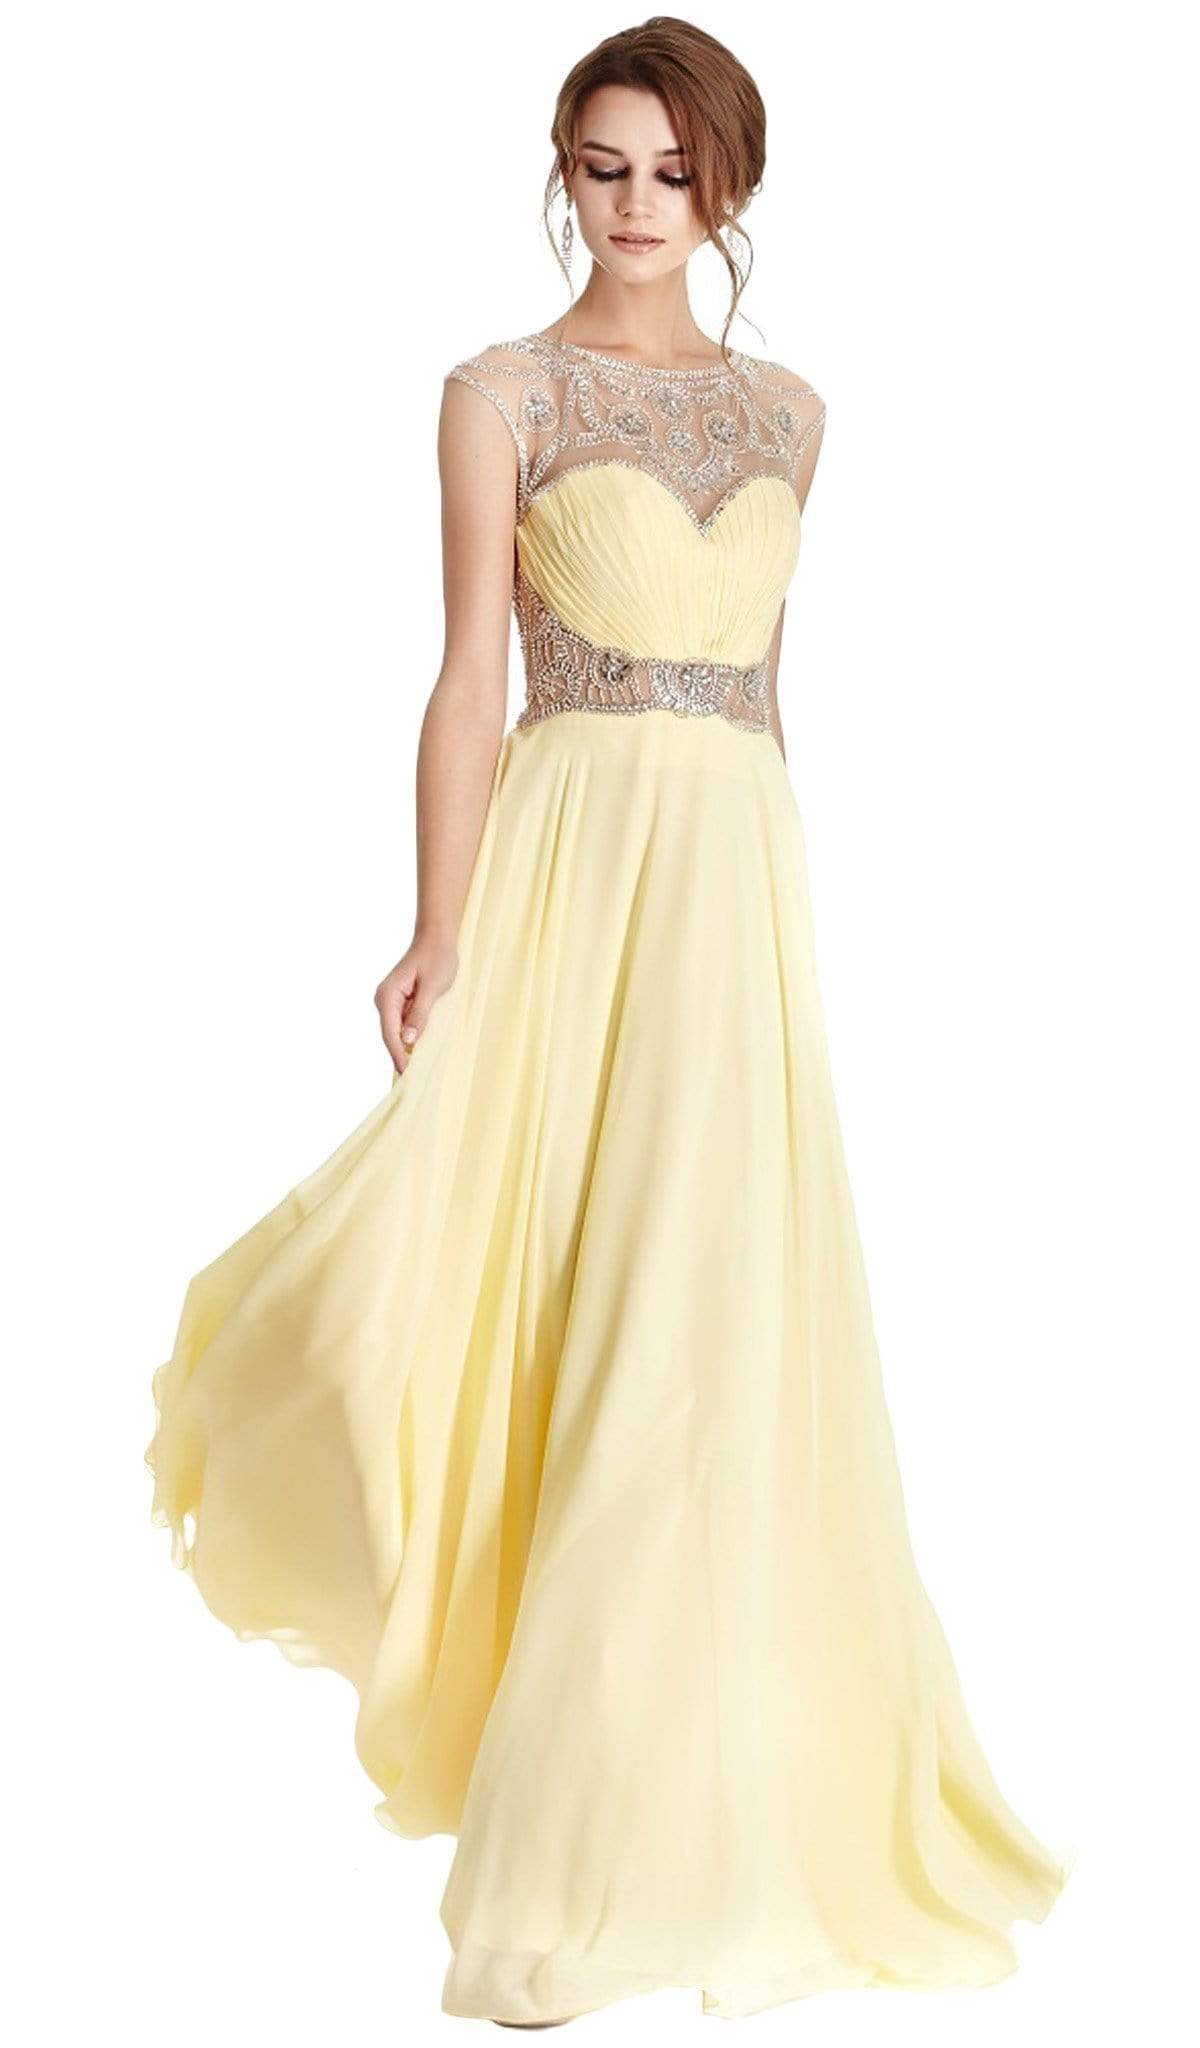 Image of Aspeed Design - Ornate Illusion Bateau A-line Prom Dress